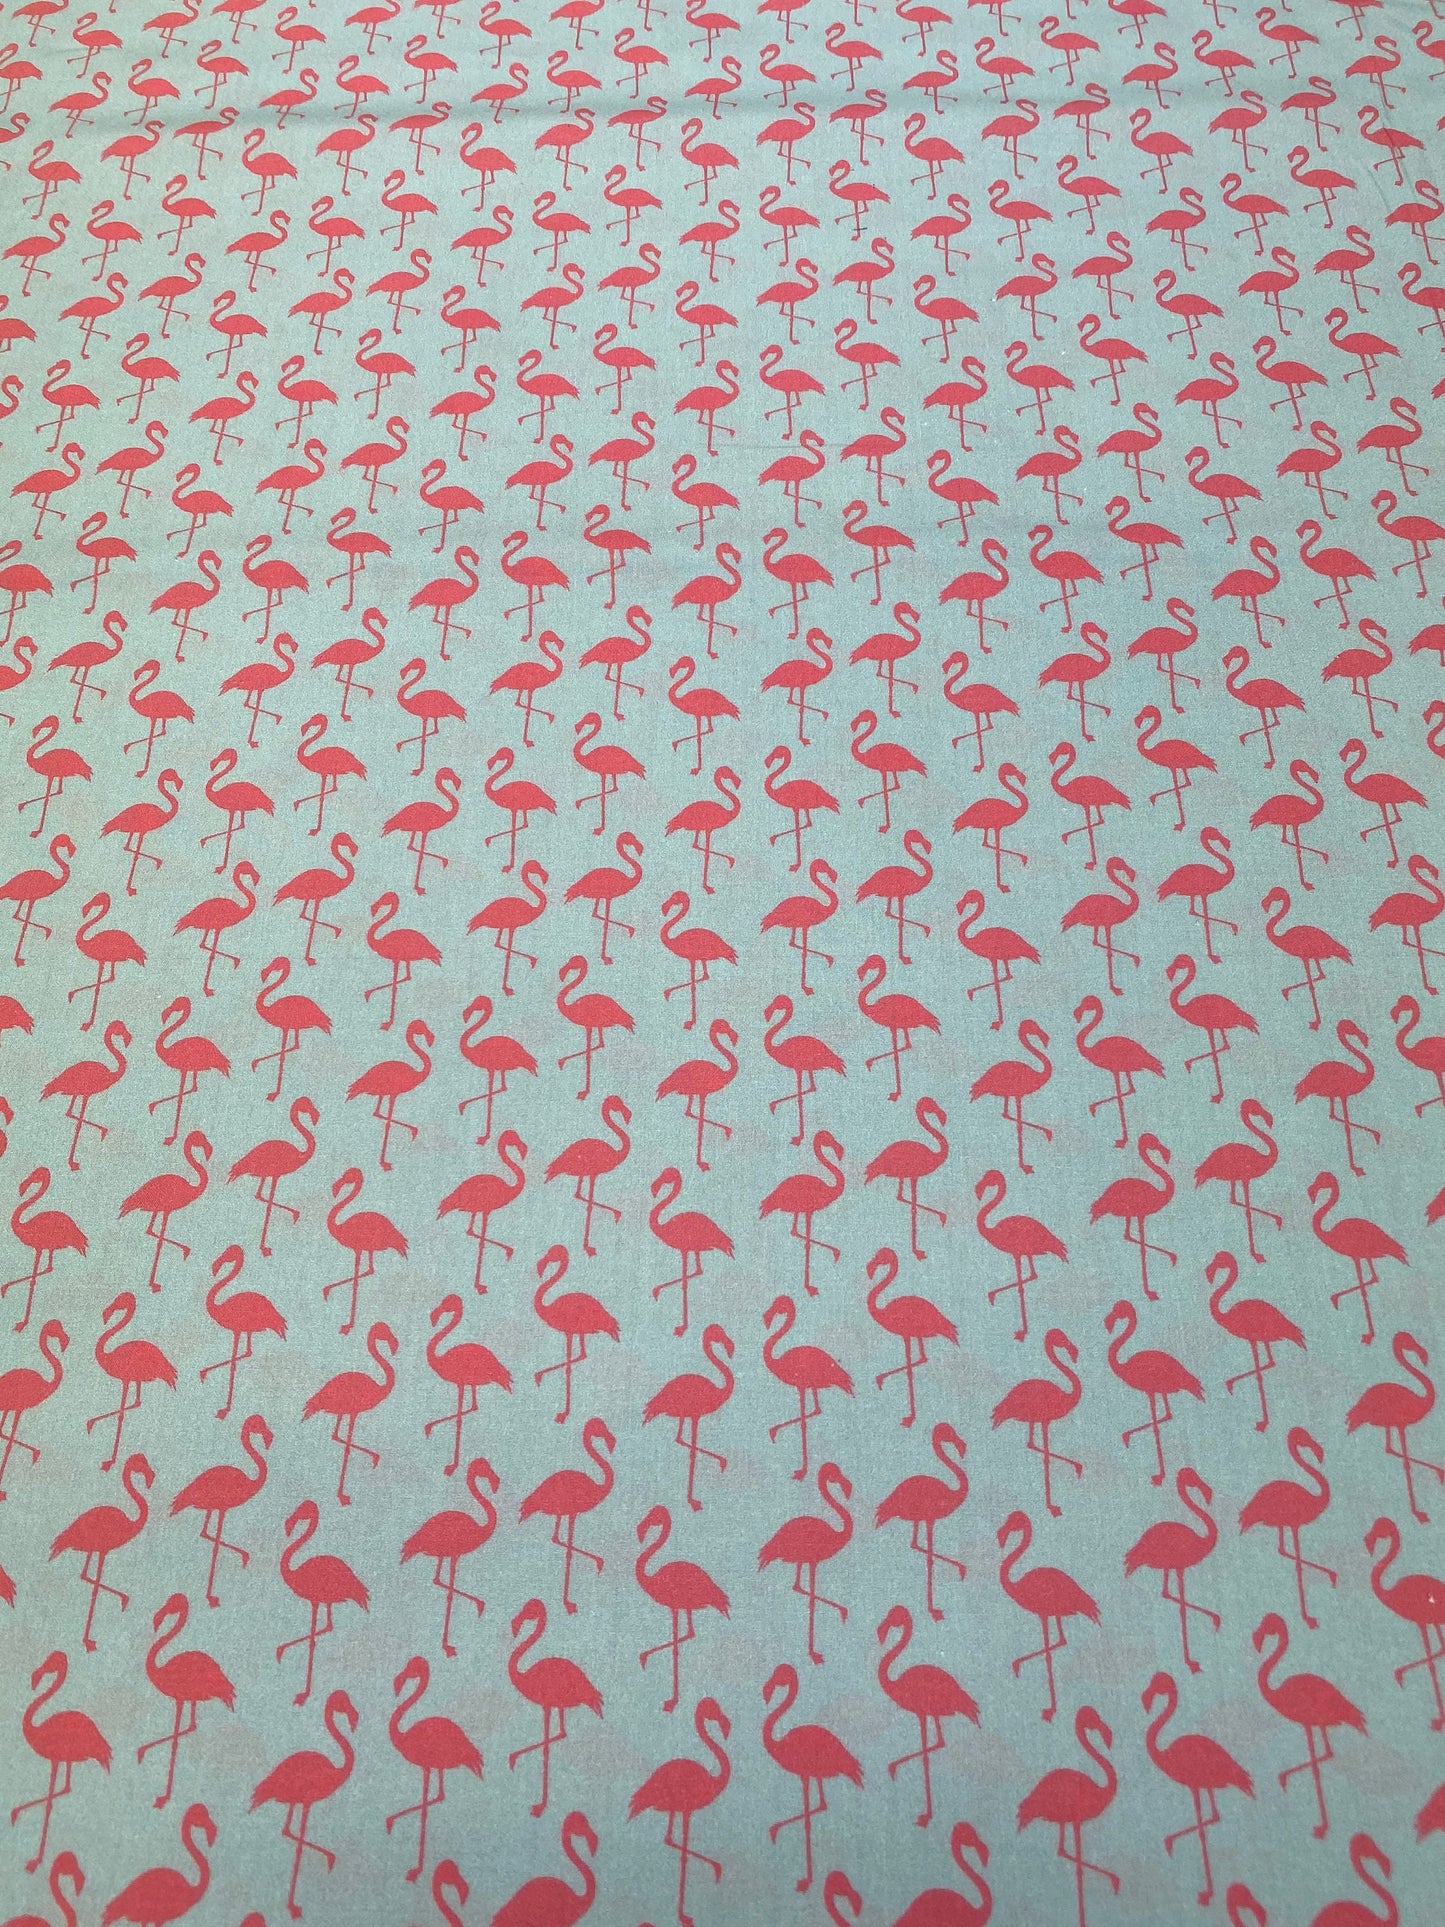 Tiere Flamingo Tier Flamingos